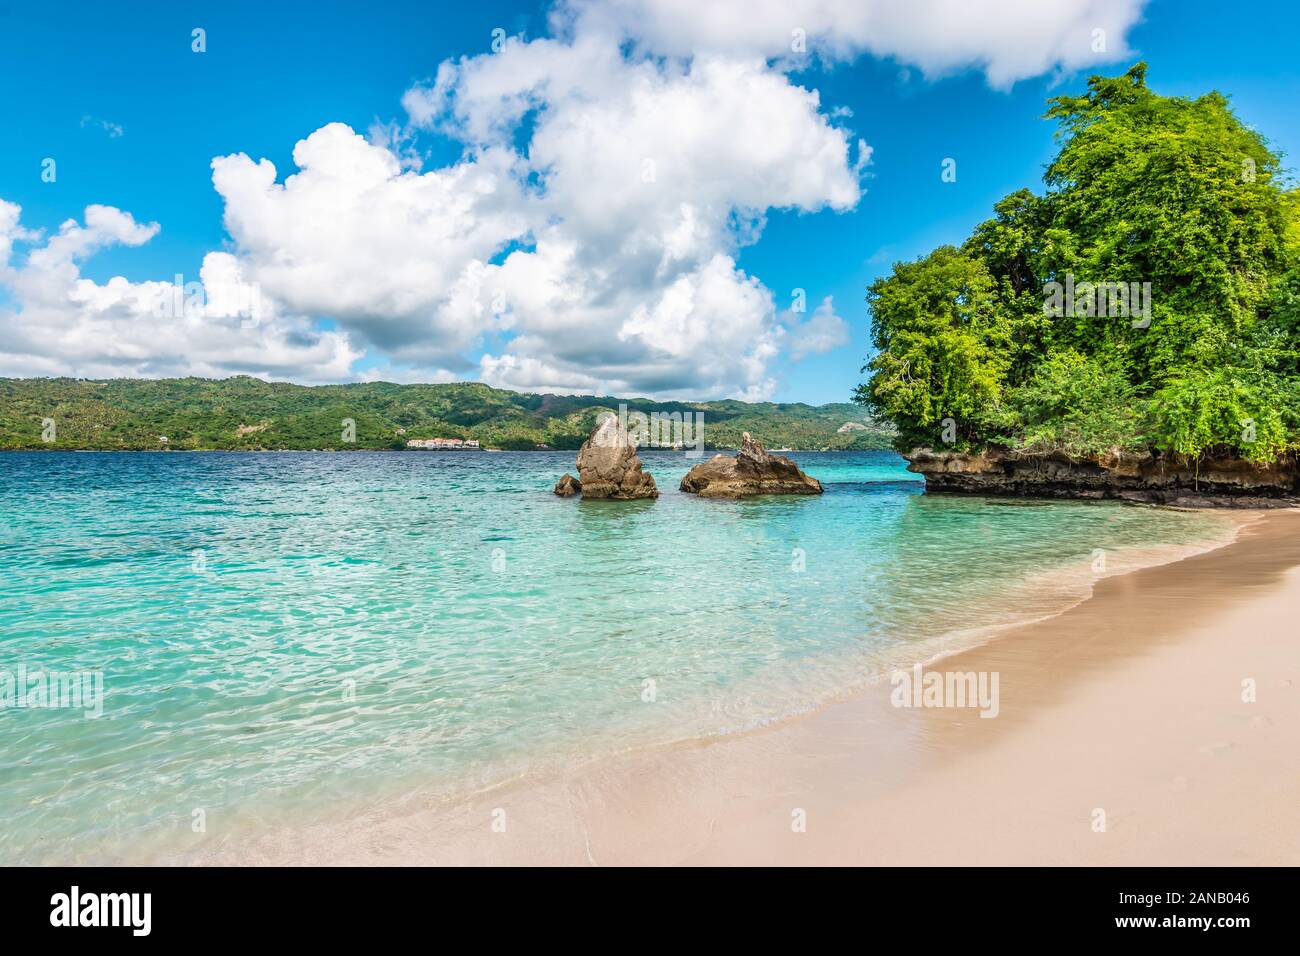 Belle plage de sable blanc et eau turquoise sur l'île tropicale de Cayo Levantado, Baie de Samana, République dominicaine. Banque D'Images